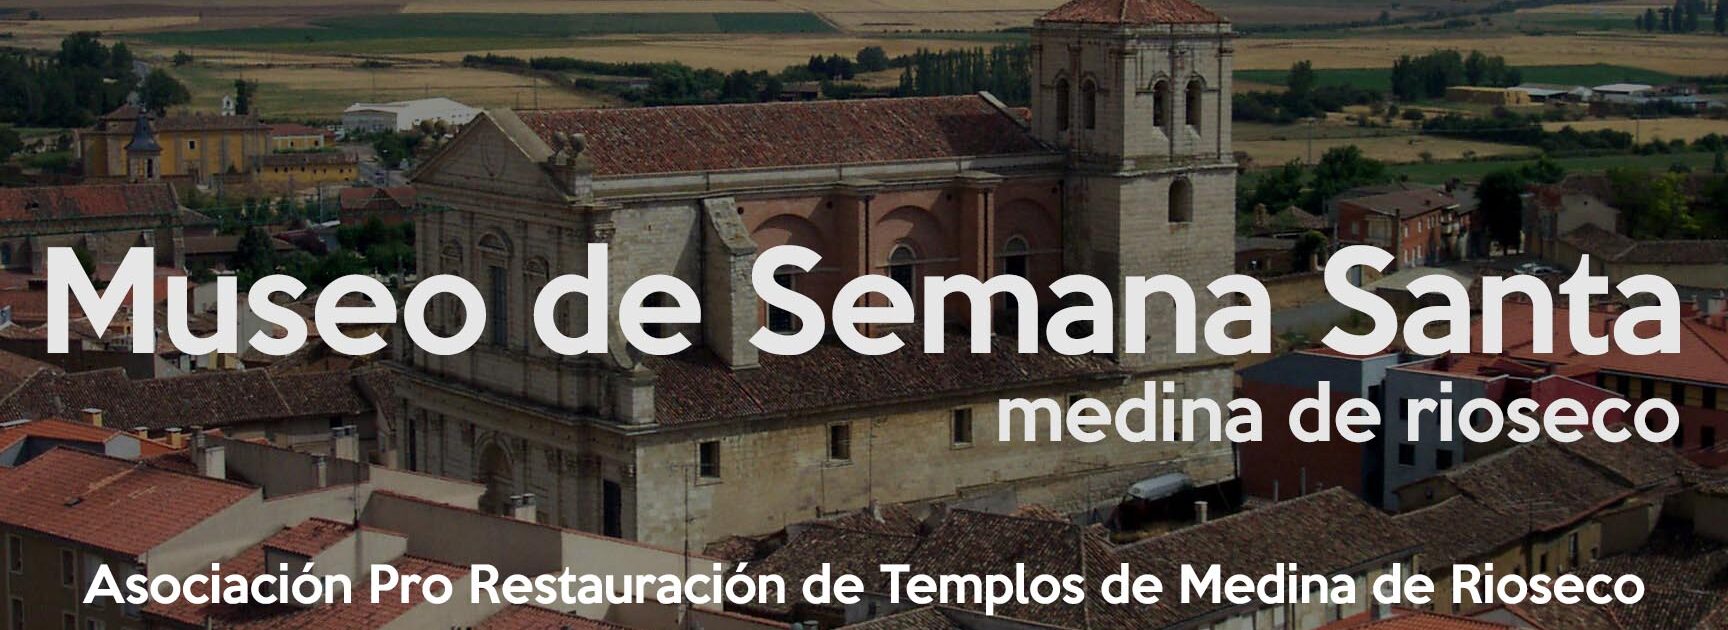 MUSEO DE SEMANA SANTA		Medina de Rioseco	Valladolid	Museo